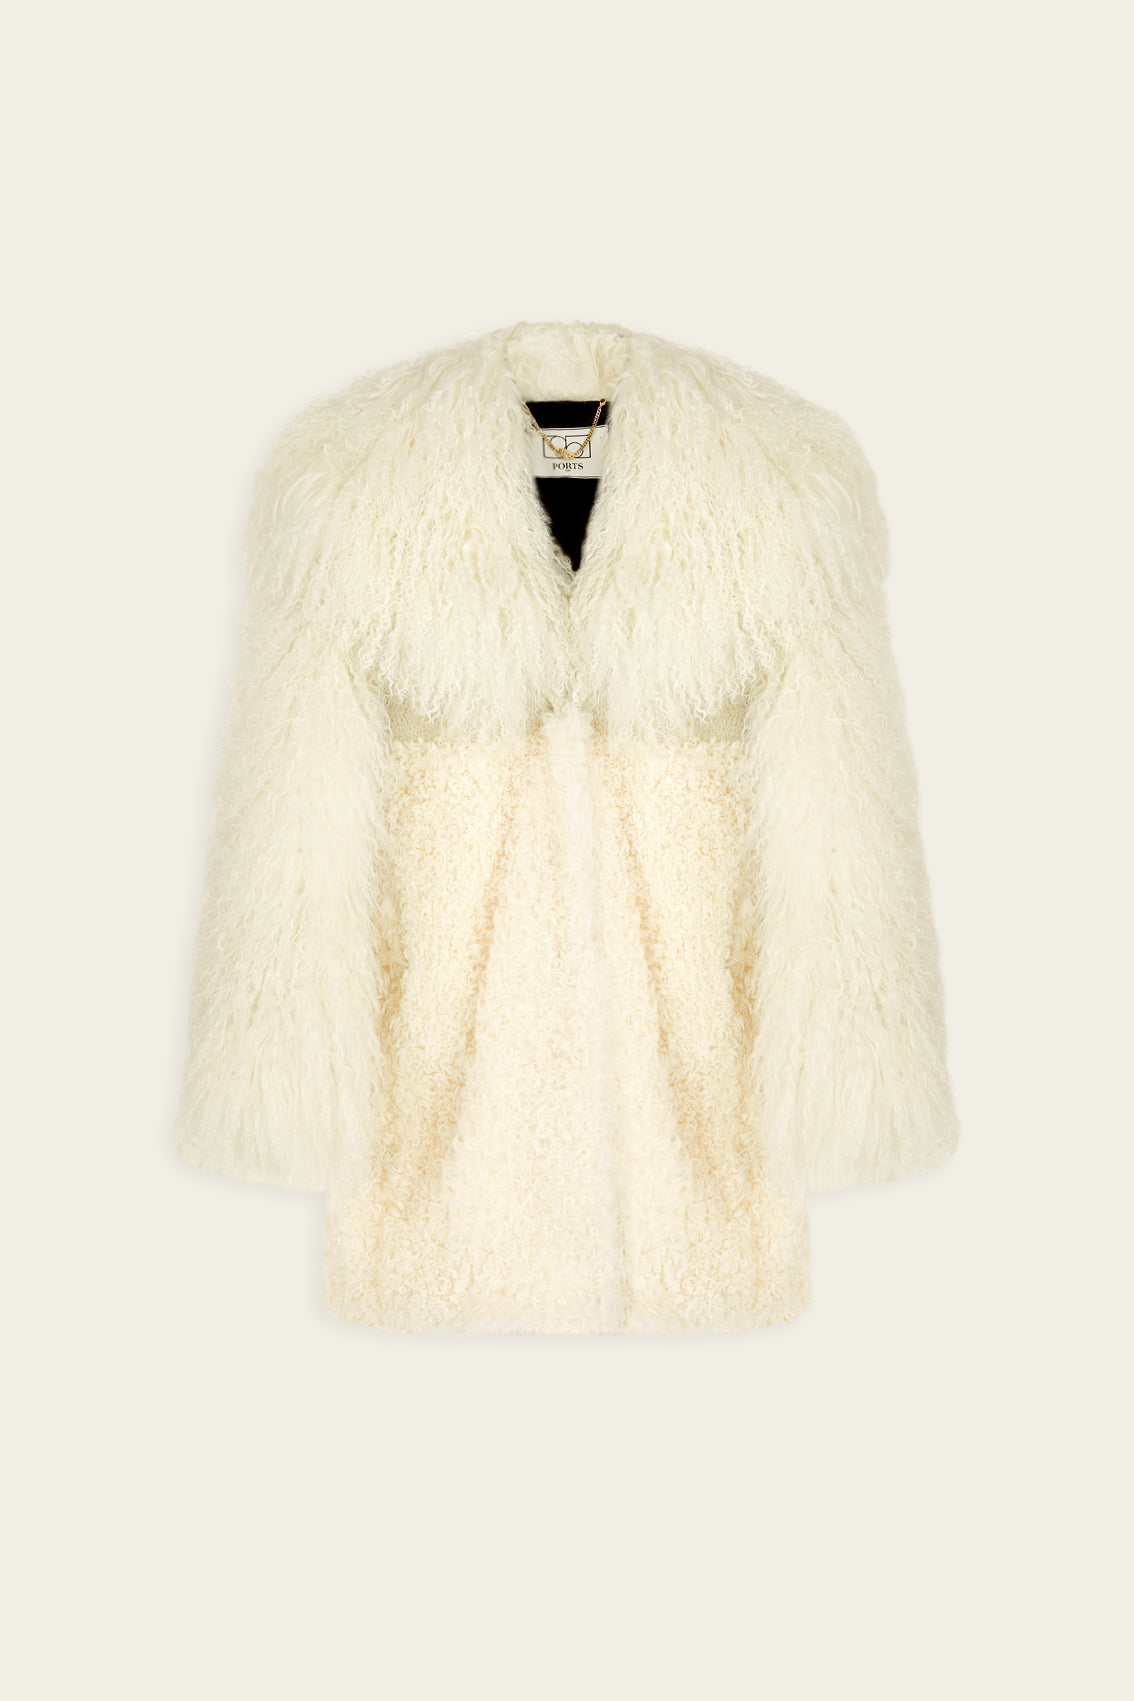 Mixed Fur Coat